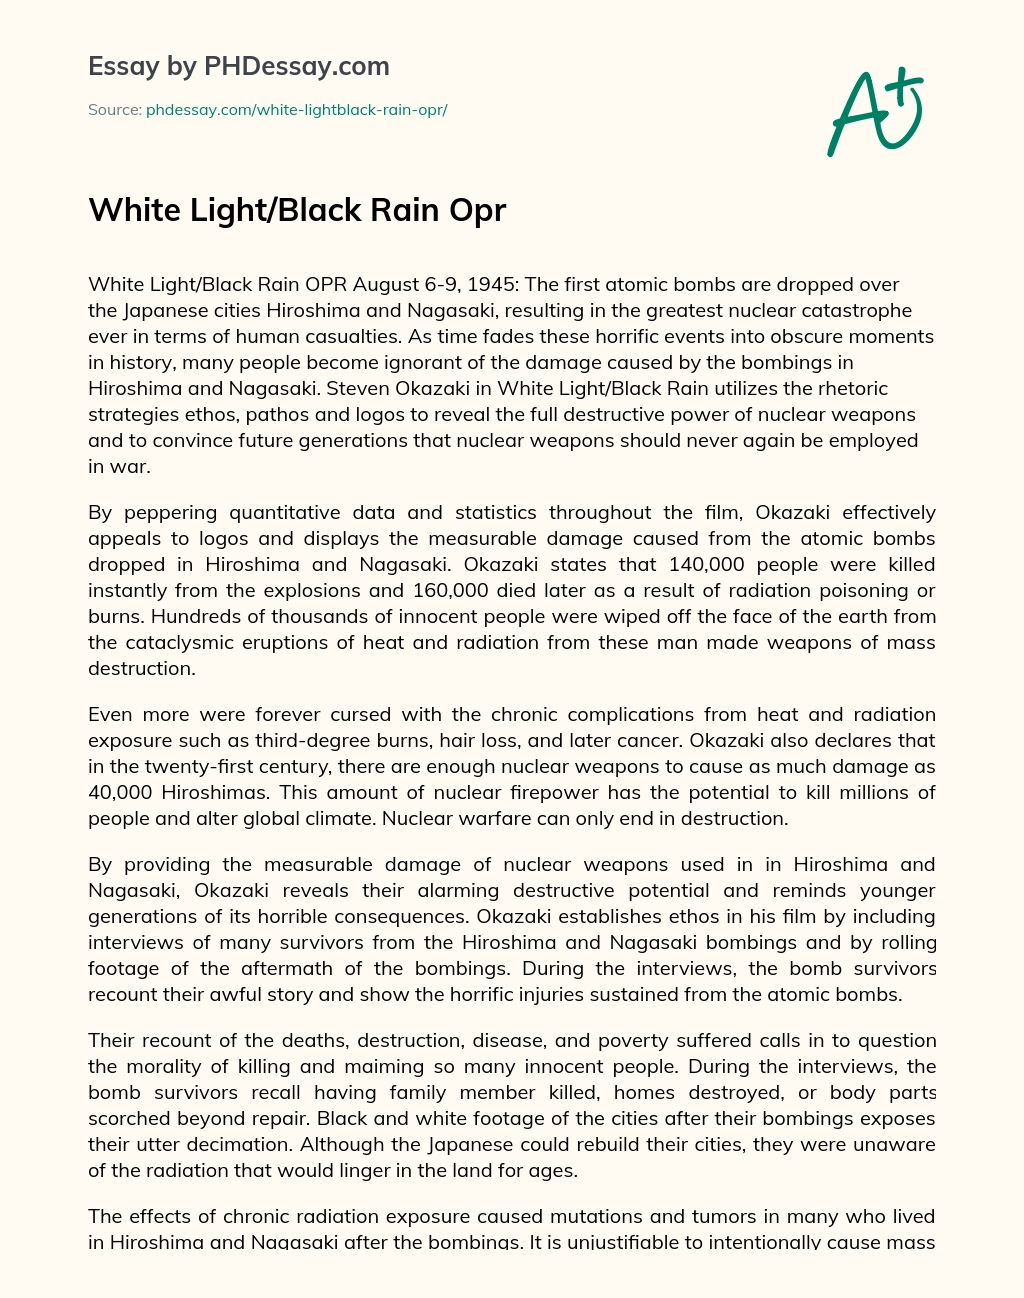 White Light/Black Rain Opr essay